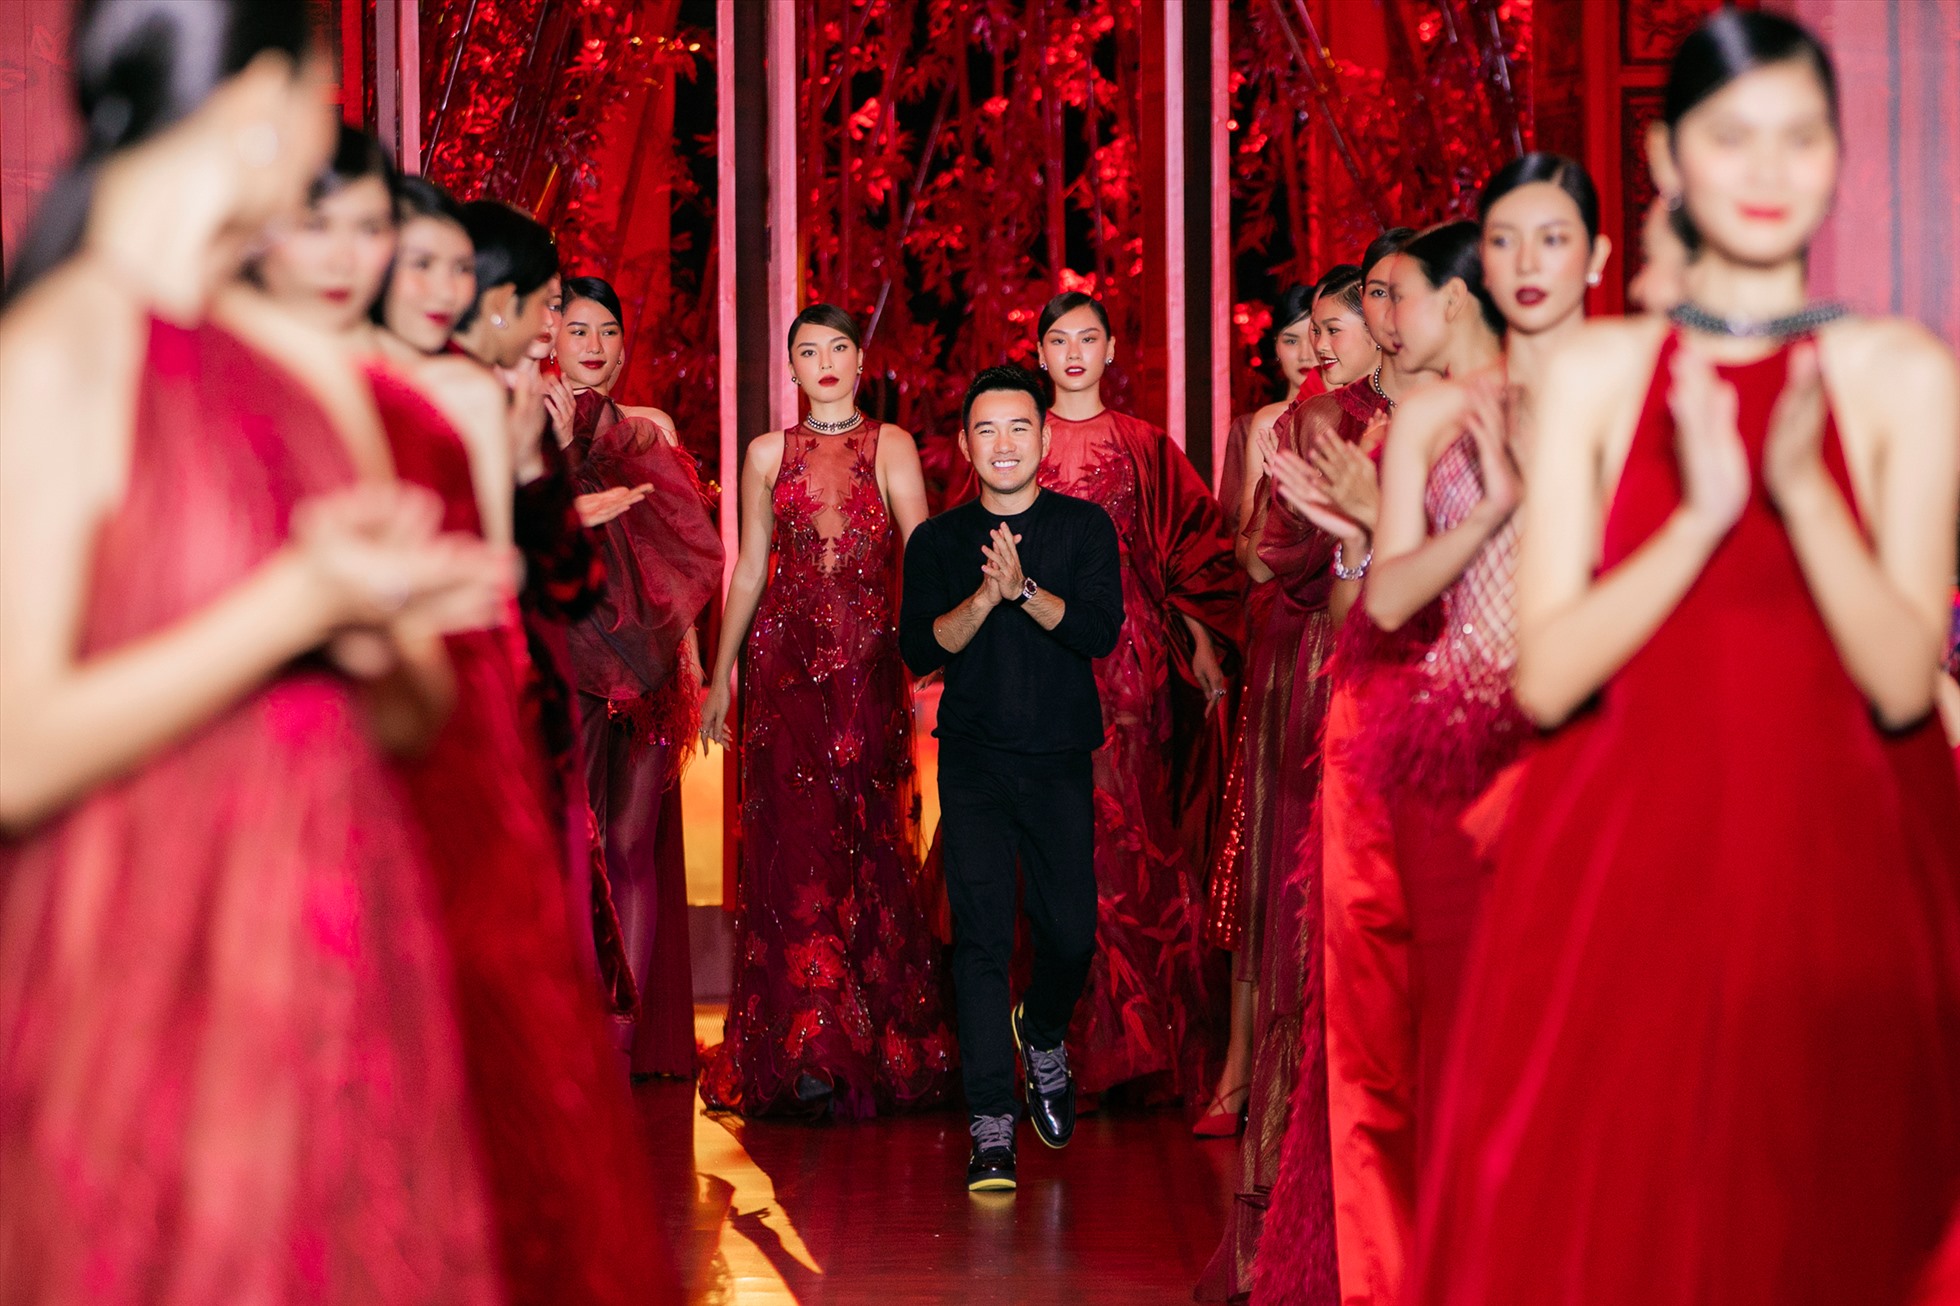 với sự tinh tế trong từng bộ trang phục, nhà thiết kế Lê Thanh Hoà một lần nữa chiêu đãi giới mộ điệu bữa tiệc thời trang mãn nhãn trong tiết thu Hà Nội. Ảnh: Kiếng Cận Team